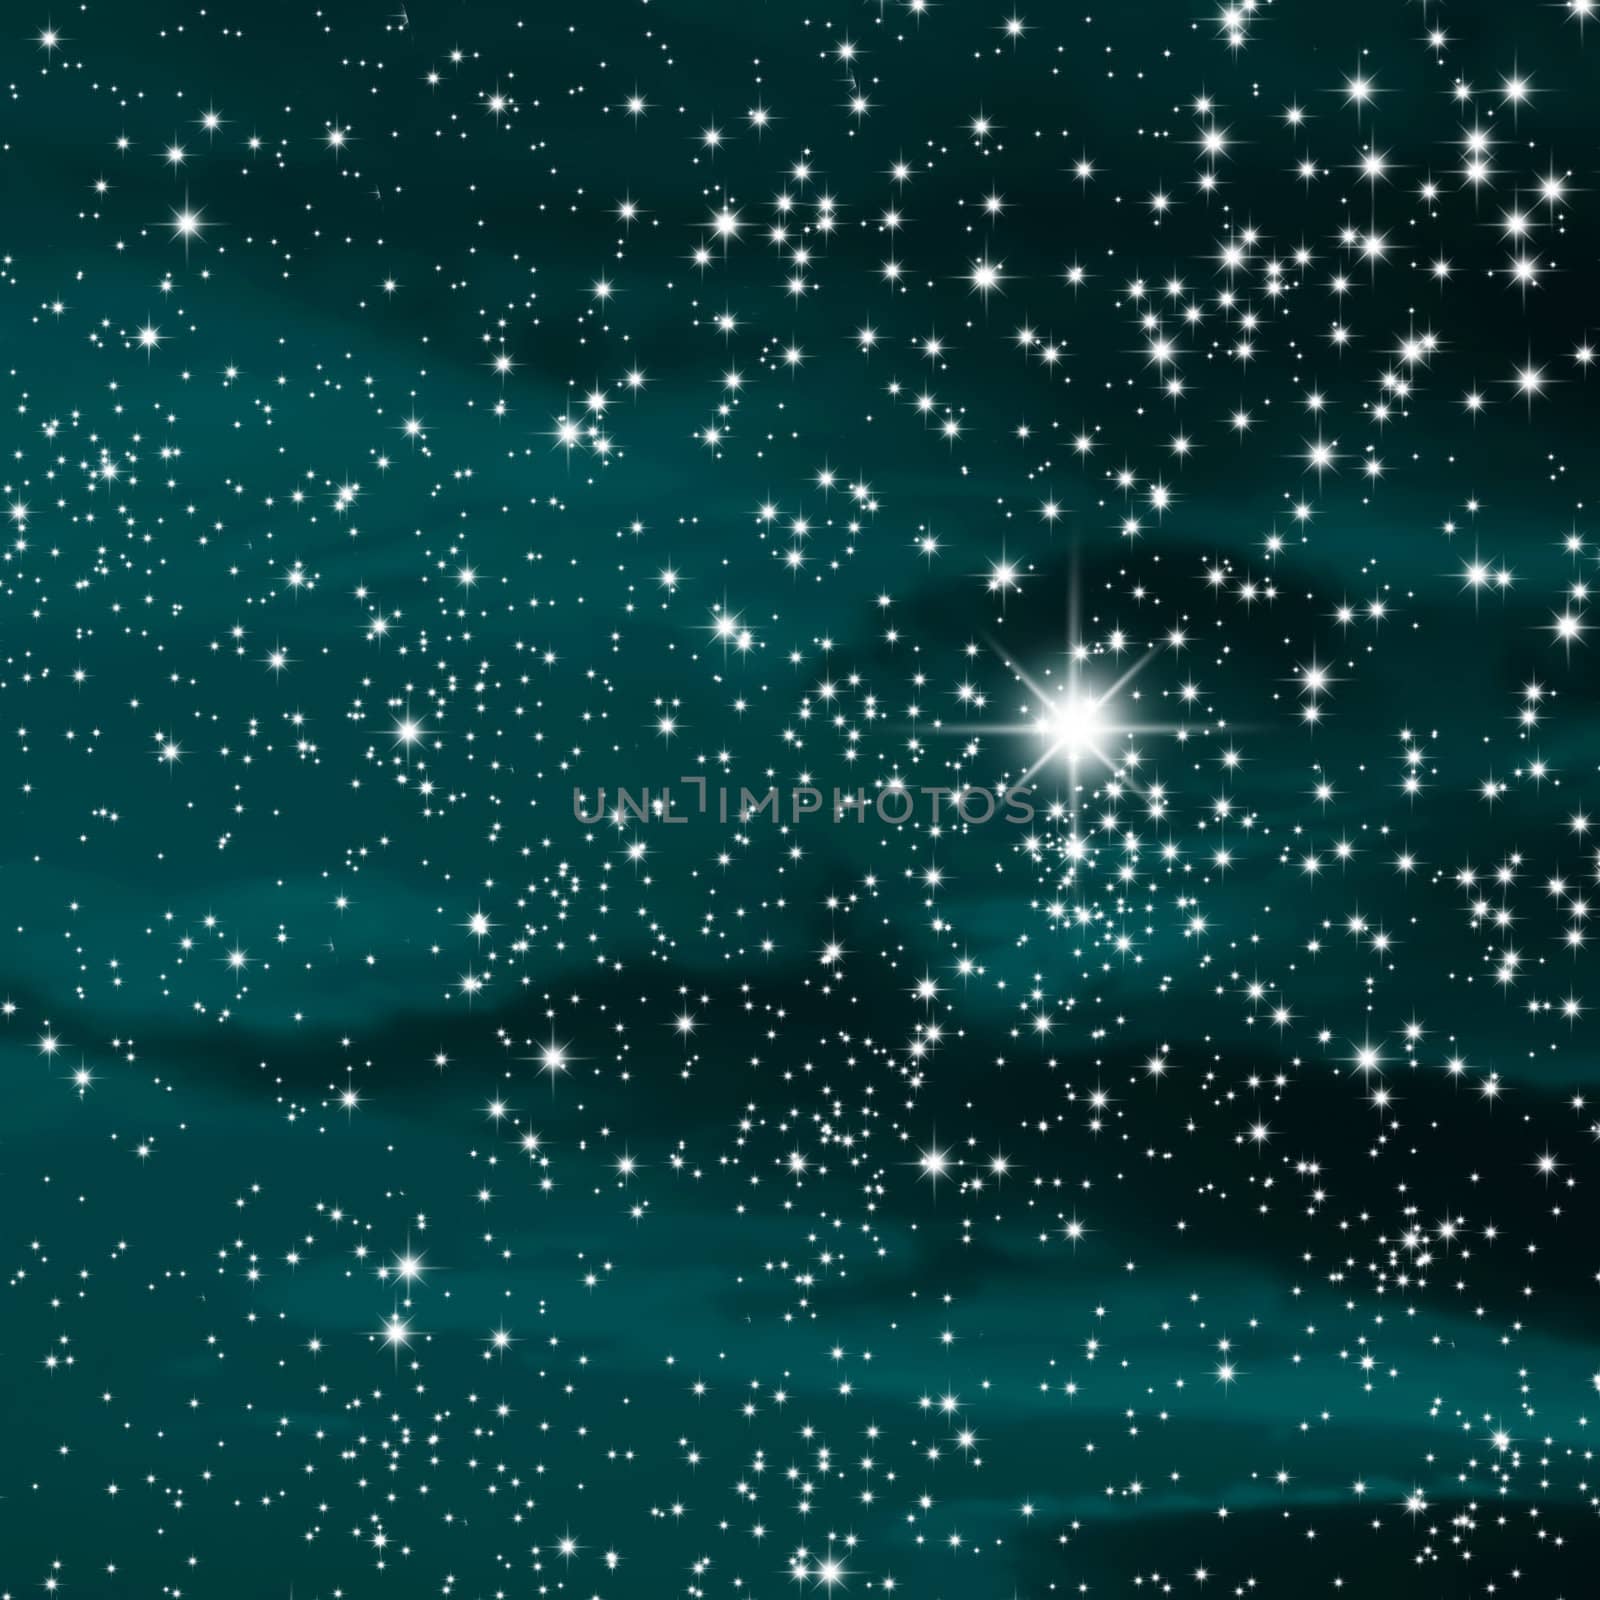 Stars nebula by karelindi